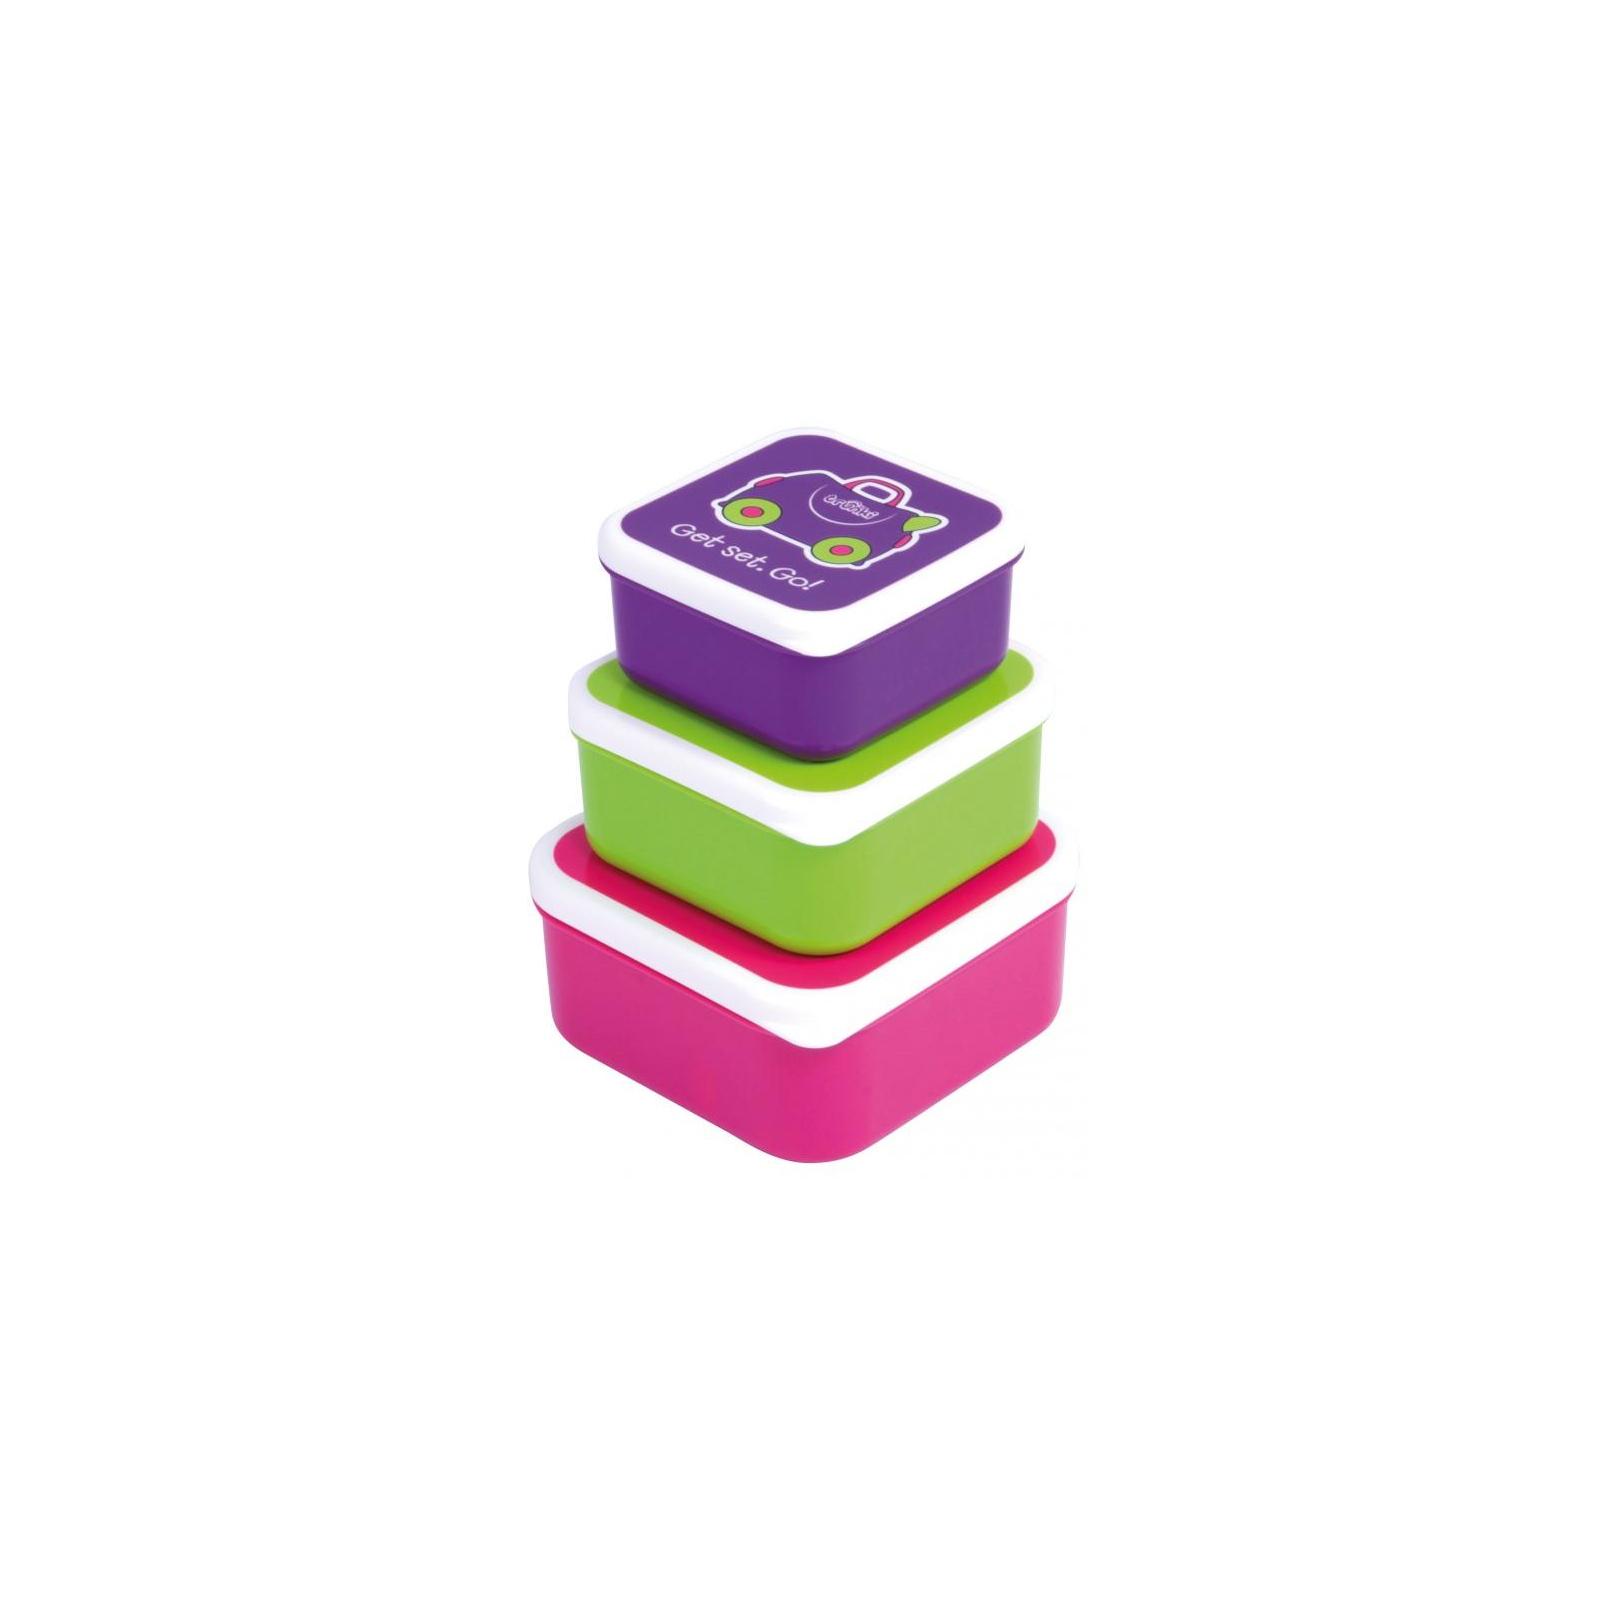 Контейнер для хранения продуктов Trunki Набор (малиновый, салатовый, фиолетовый) (0300-GB01)